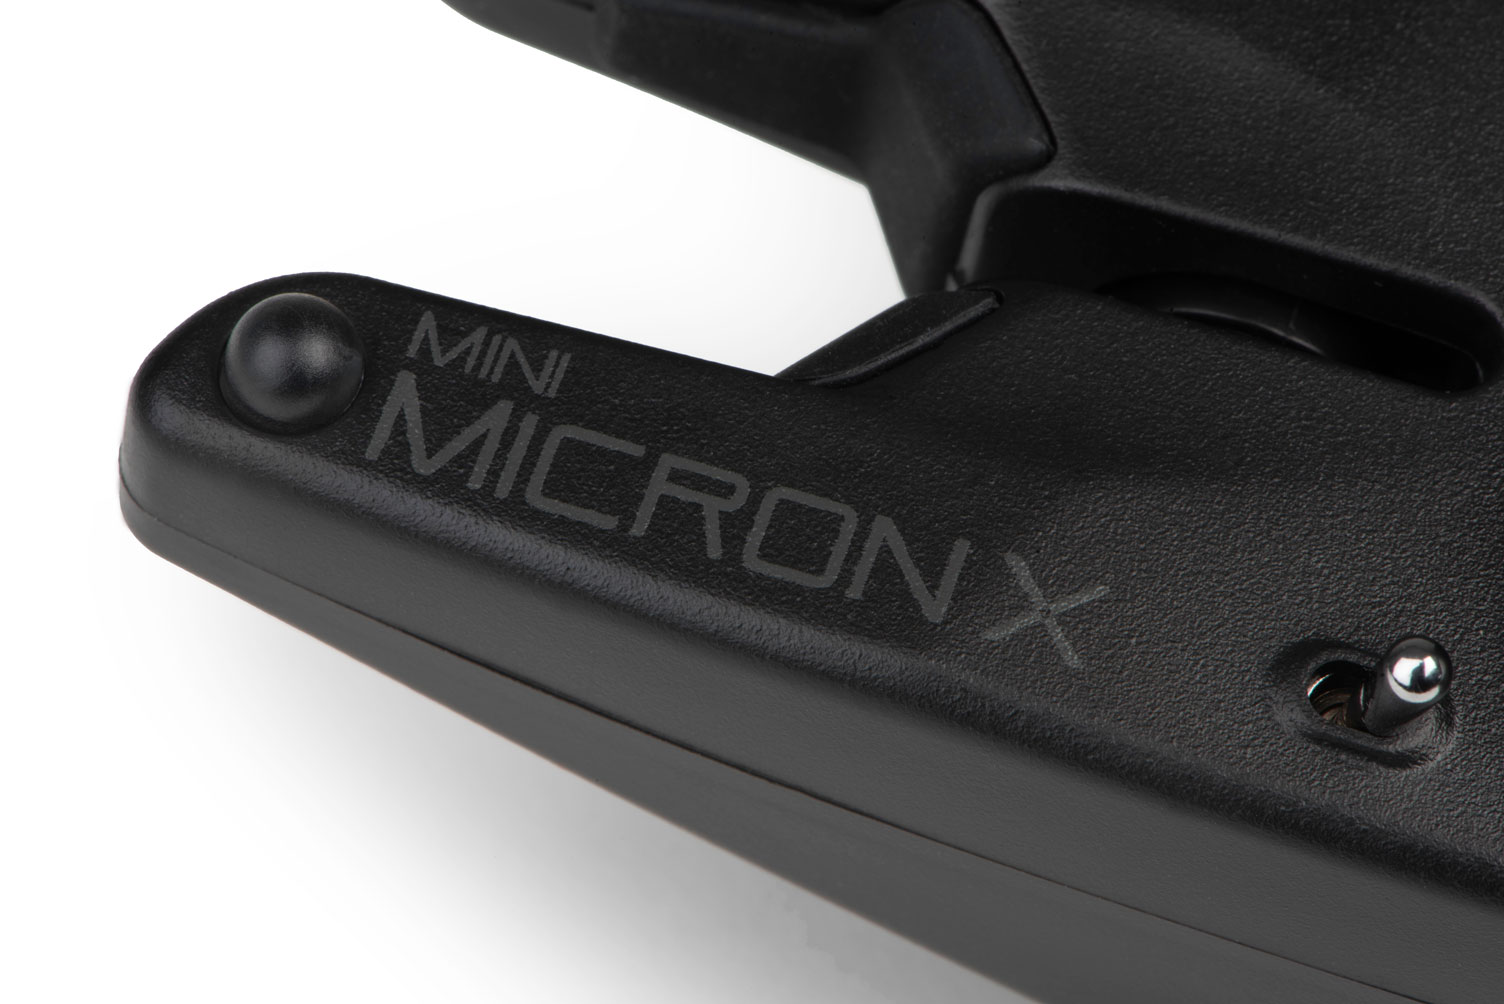 Ensemble de détecteurs de touches Fox Mini Micron X 2 Rod Set